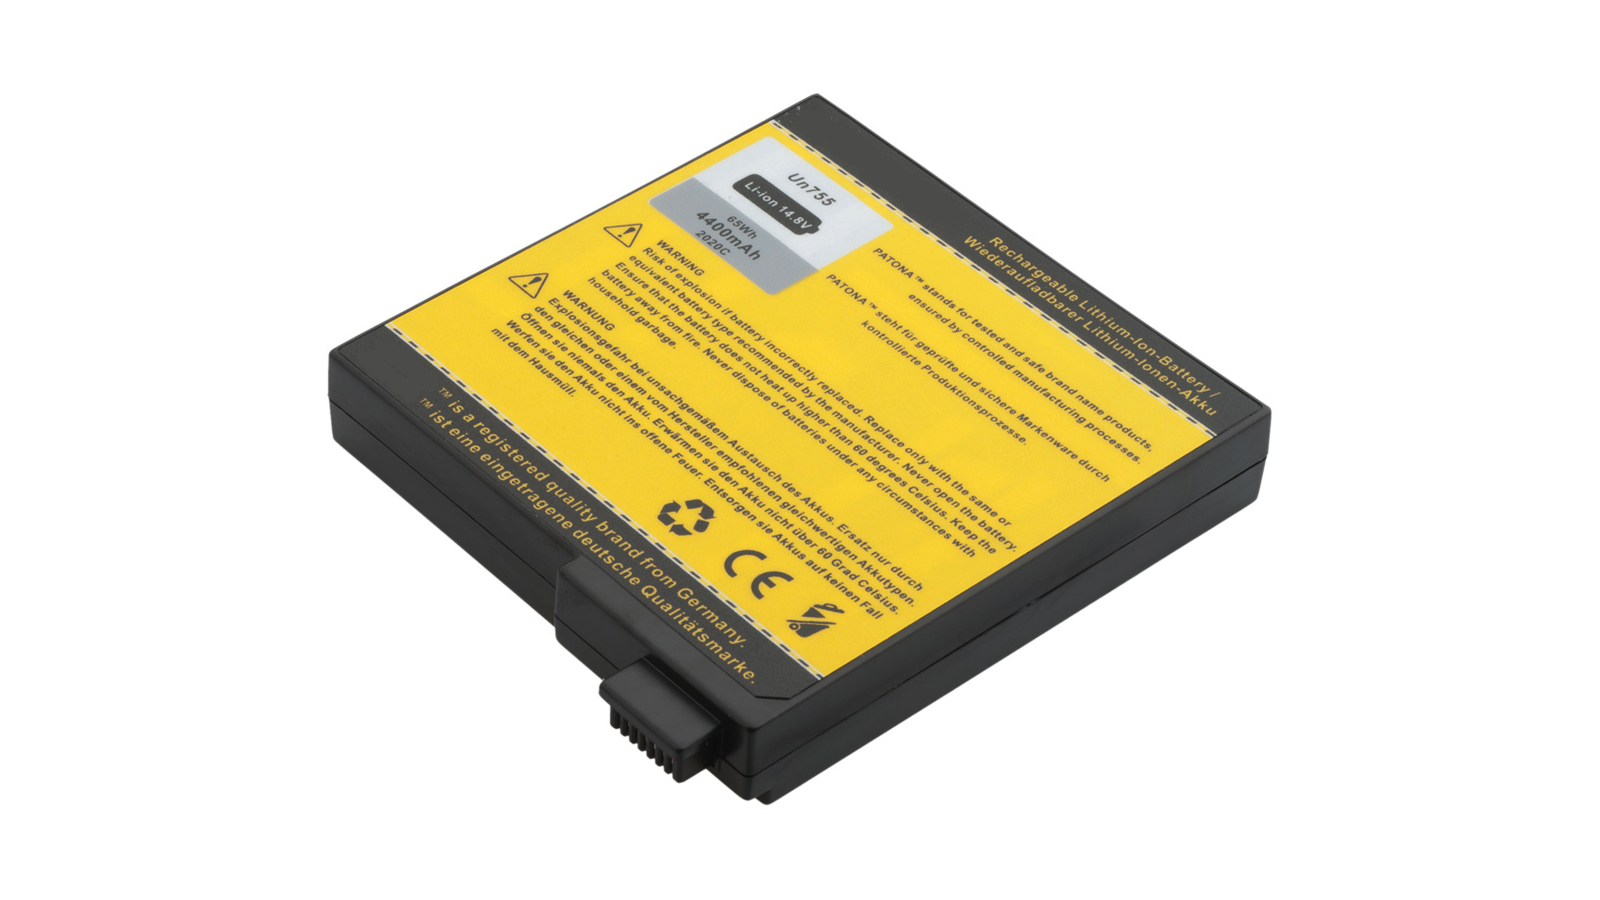 Batteria per Winbook C120 C140 XERON Sonic Pro 808LCX 8x99 4400 mAh compatibile